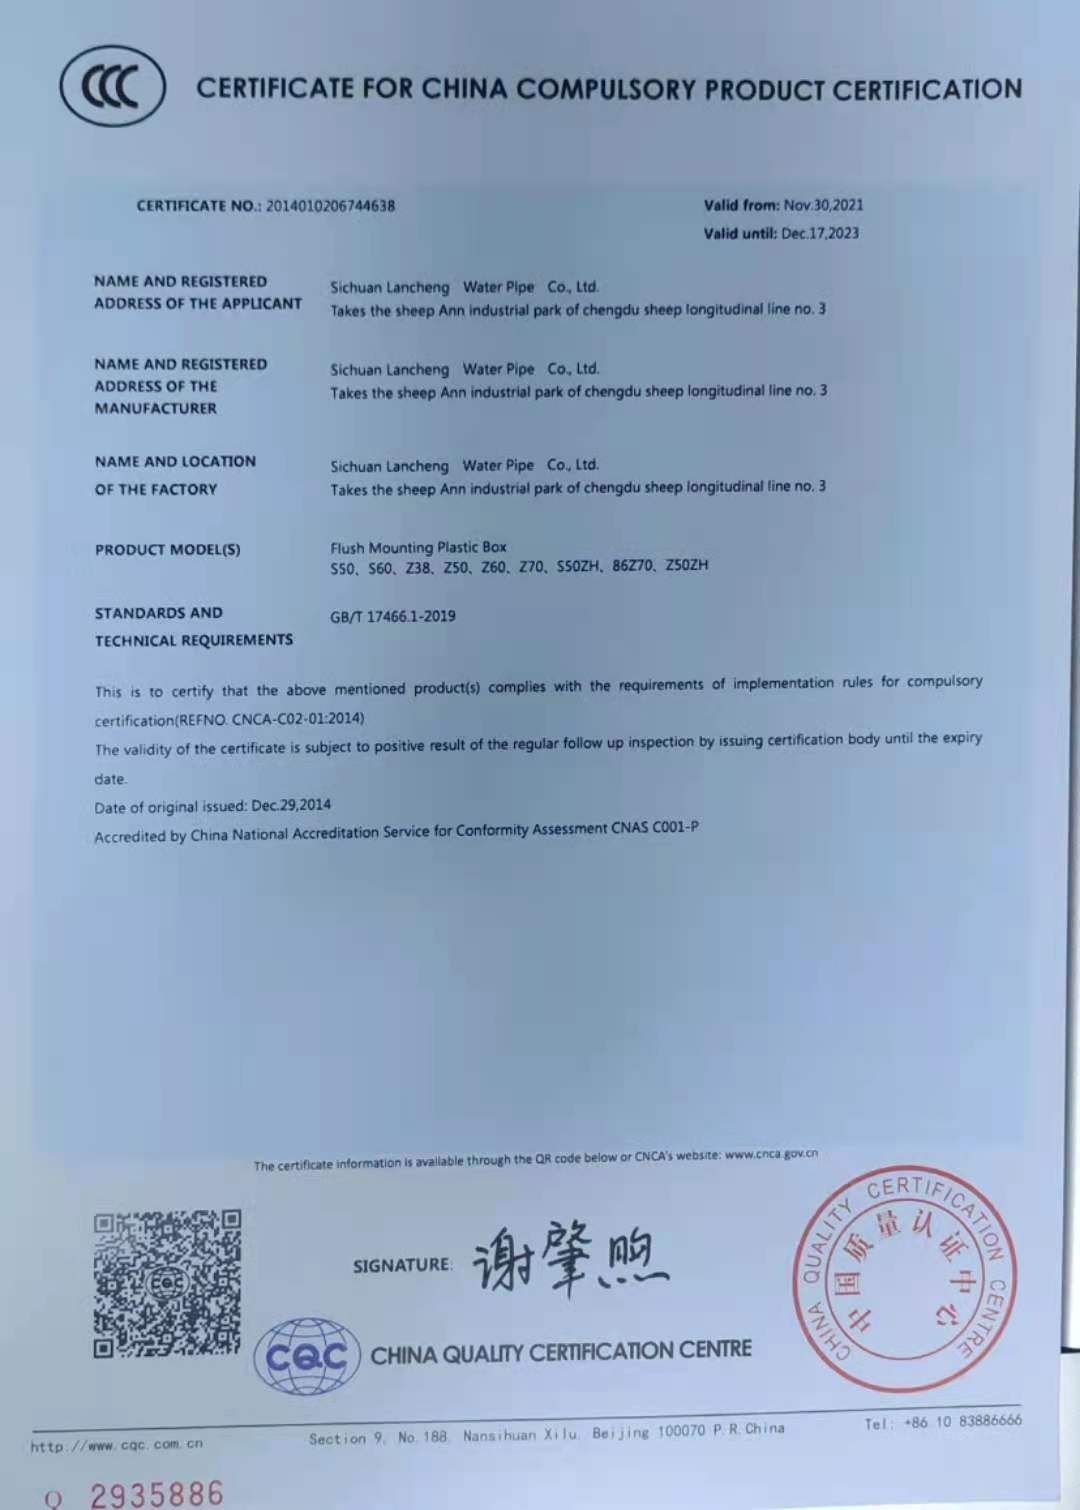 恭喜 四川兰晨管业有限公司 顺利通过审核获得国家强制性CCC认证